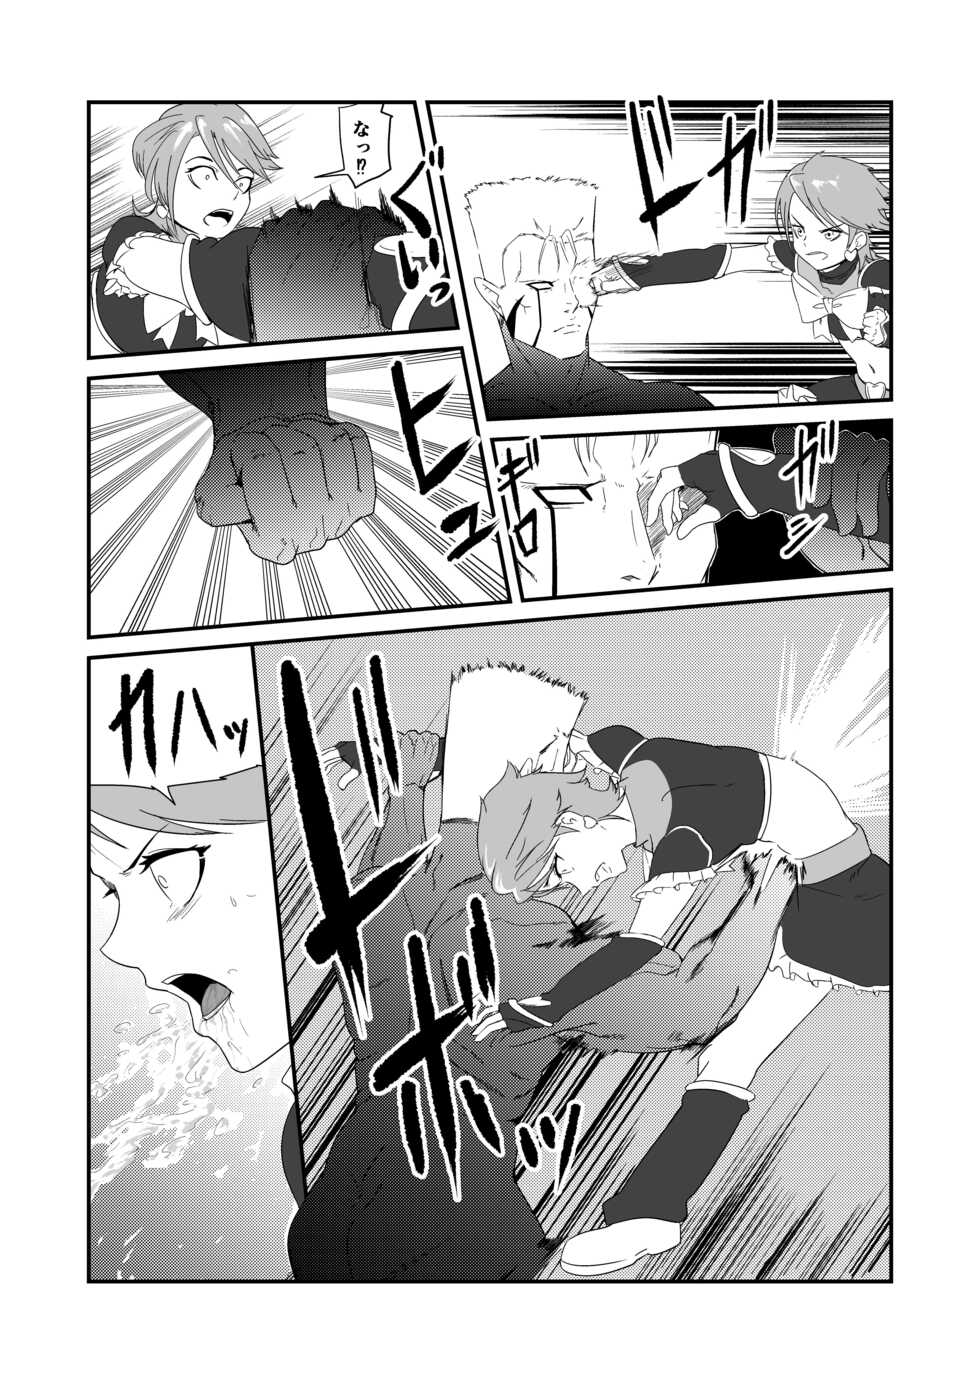 [JabyssK] Belly Crisis 7 (Futari wa Pretty Cure) - Page 22